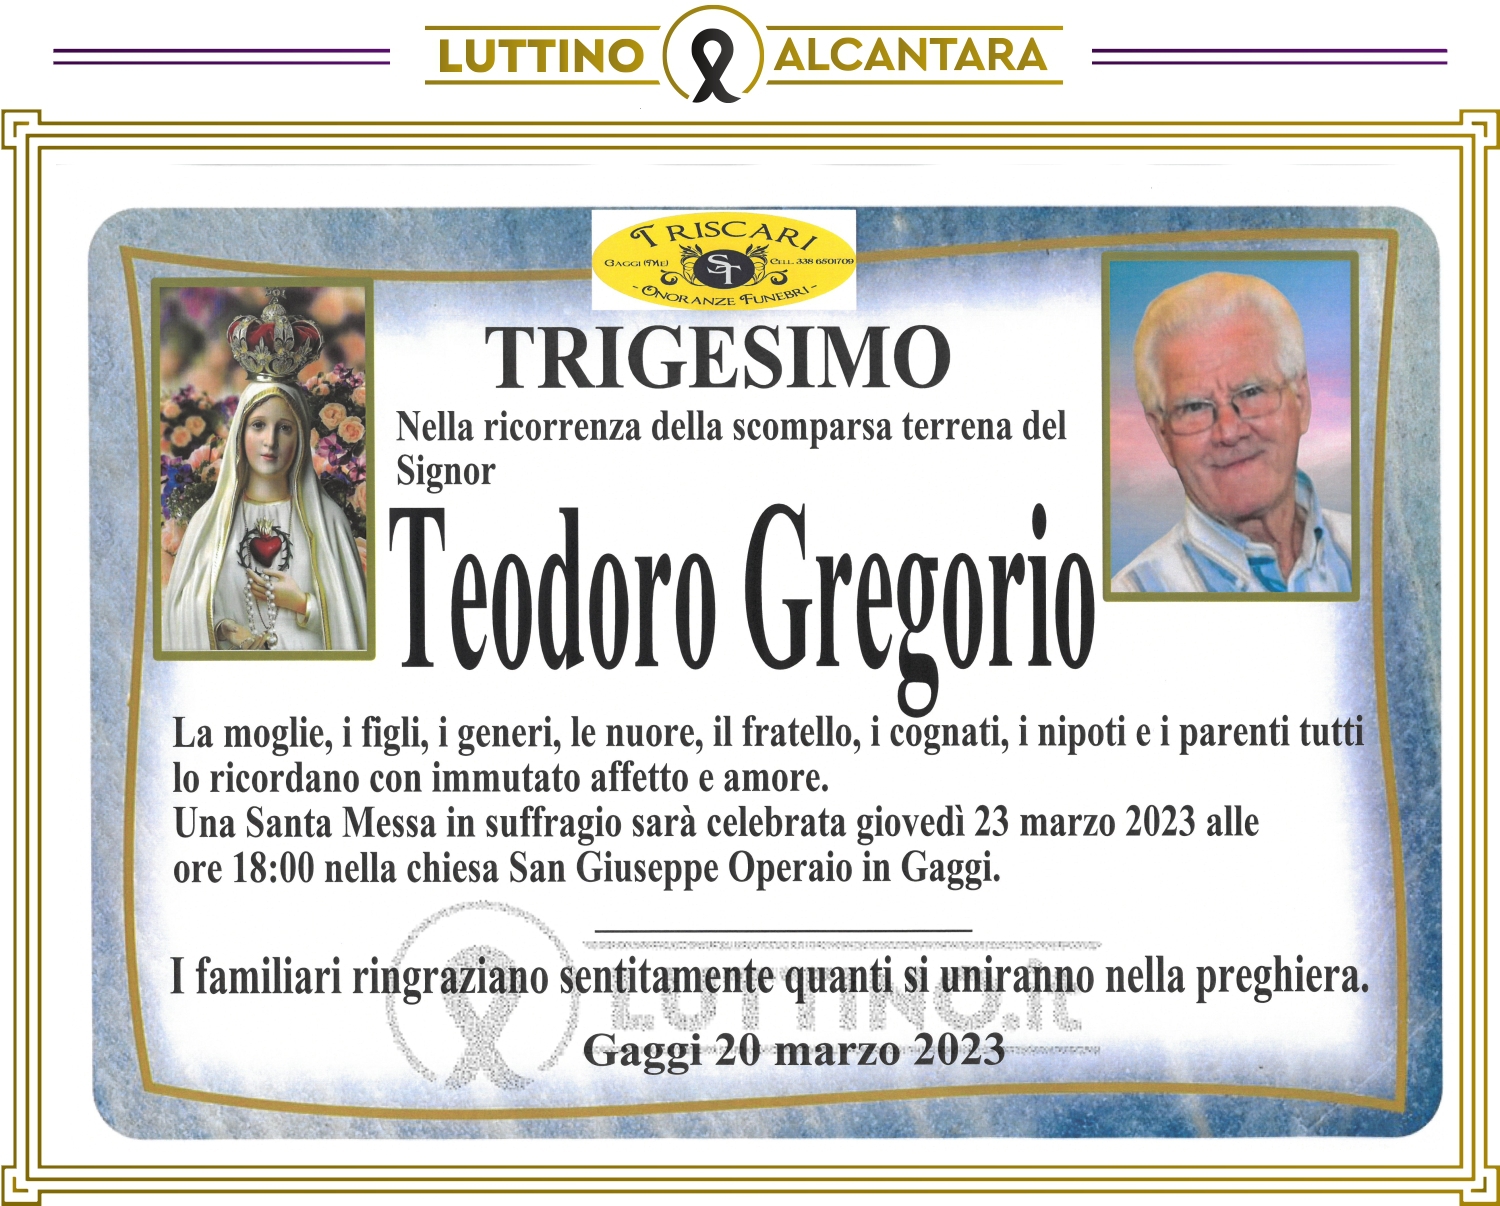 Teodoro Gregorio